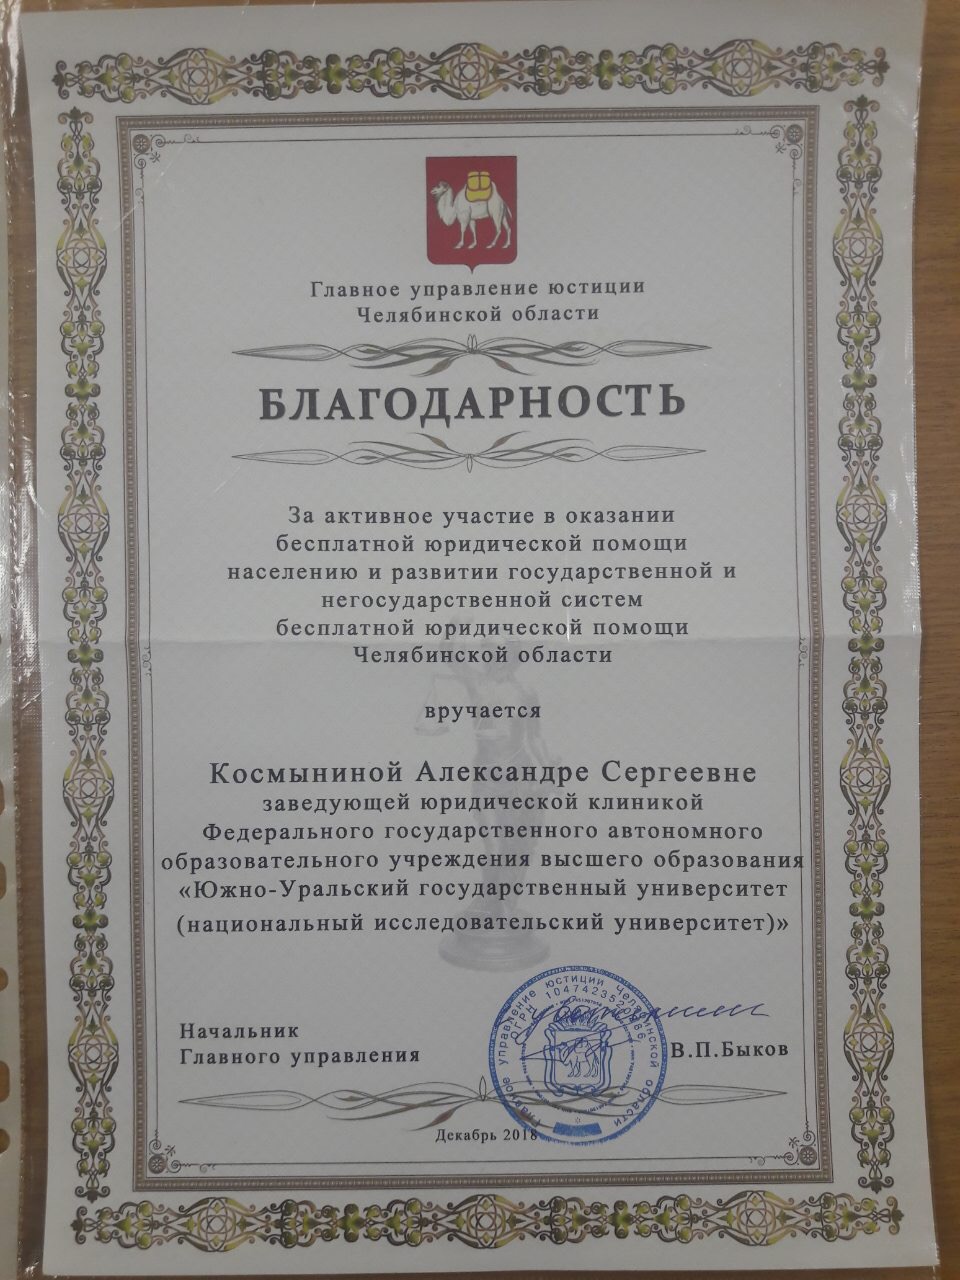 Благодарность от Главного управления юстиции Челябинской области